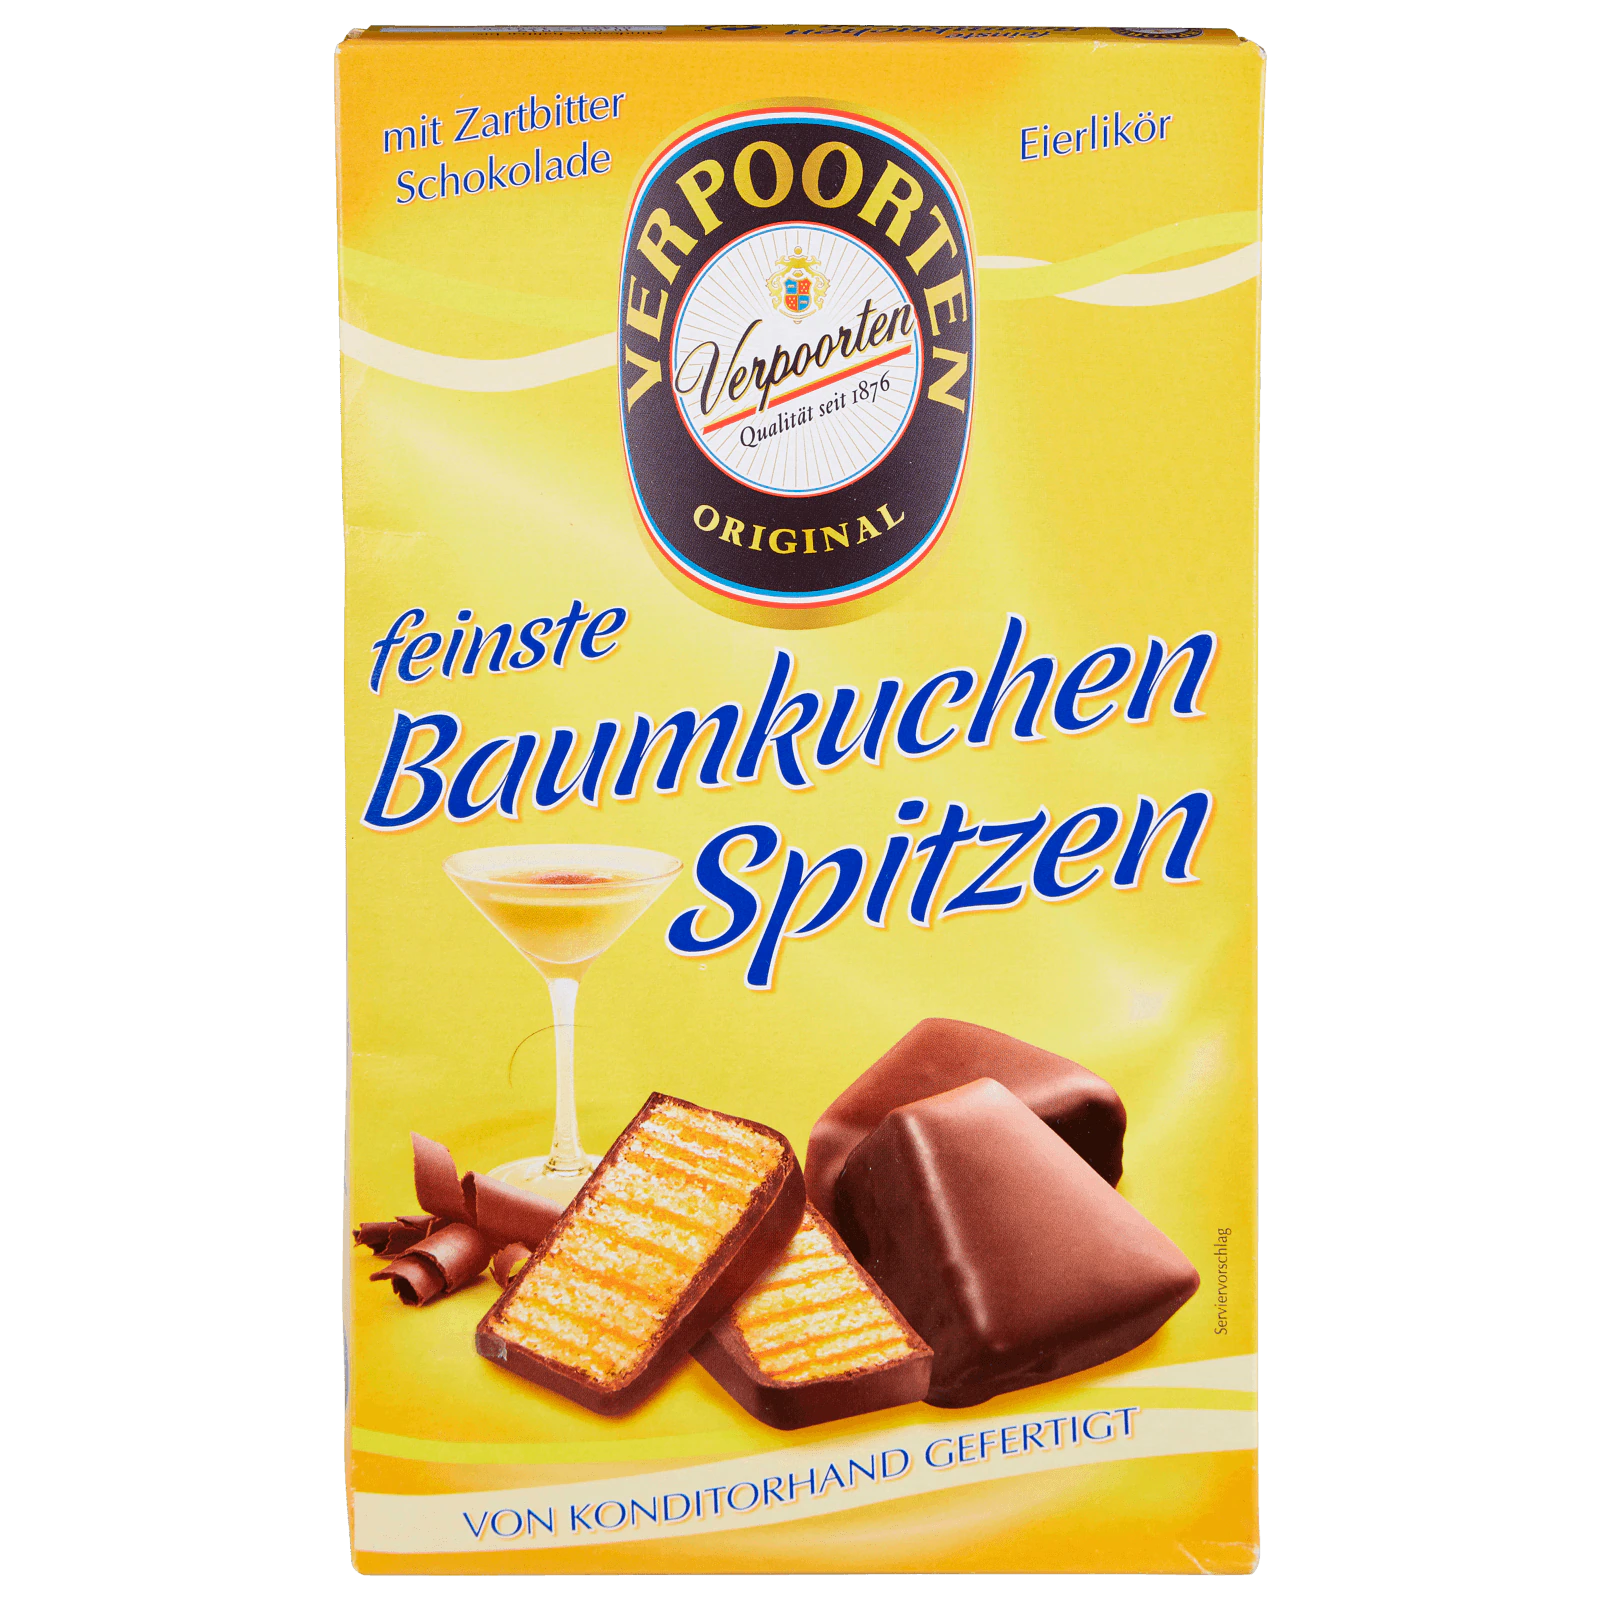 Kuchenmeister Baumkuchenspitzen Eierlikör 125g bei REWE online bestellen!